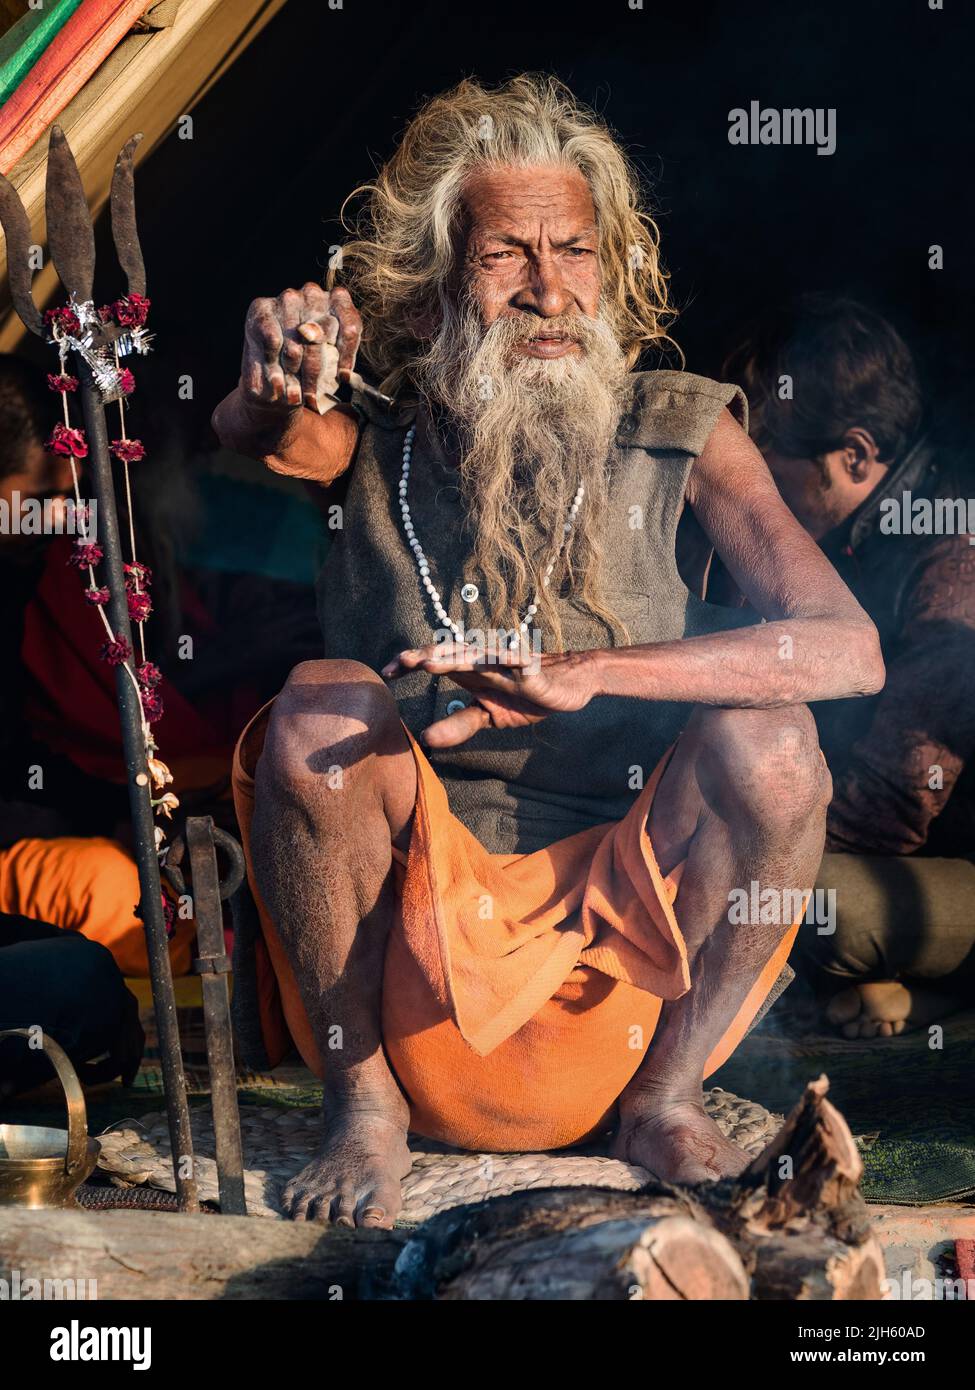 L'homme Saint indien Amar Bharati Urdhavaahu, qui a gardé son bras levé pendant plus de 40 ans en l'honneur de Dieu hindou Shiva, au Festival Kumbh Mela en Inde. Banque D'Images